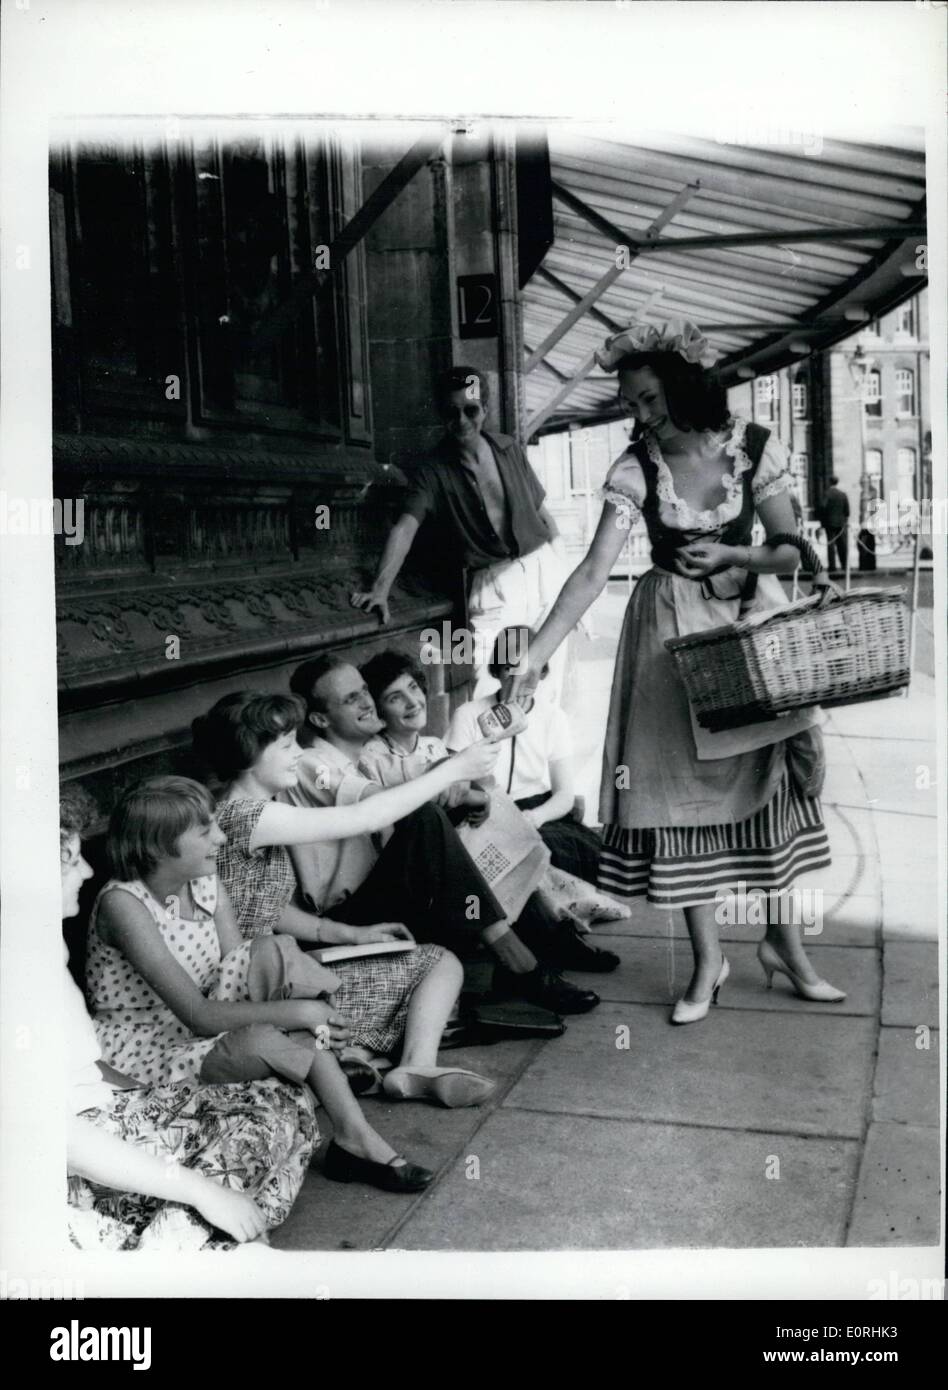 Septembre 09, 1959 - Street Cris entendu à nouveau à Londres 18e siècle fait revivre la tradition. Cris de rue traditionnels ont été entendues à nouveau en Banque D'Images